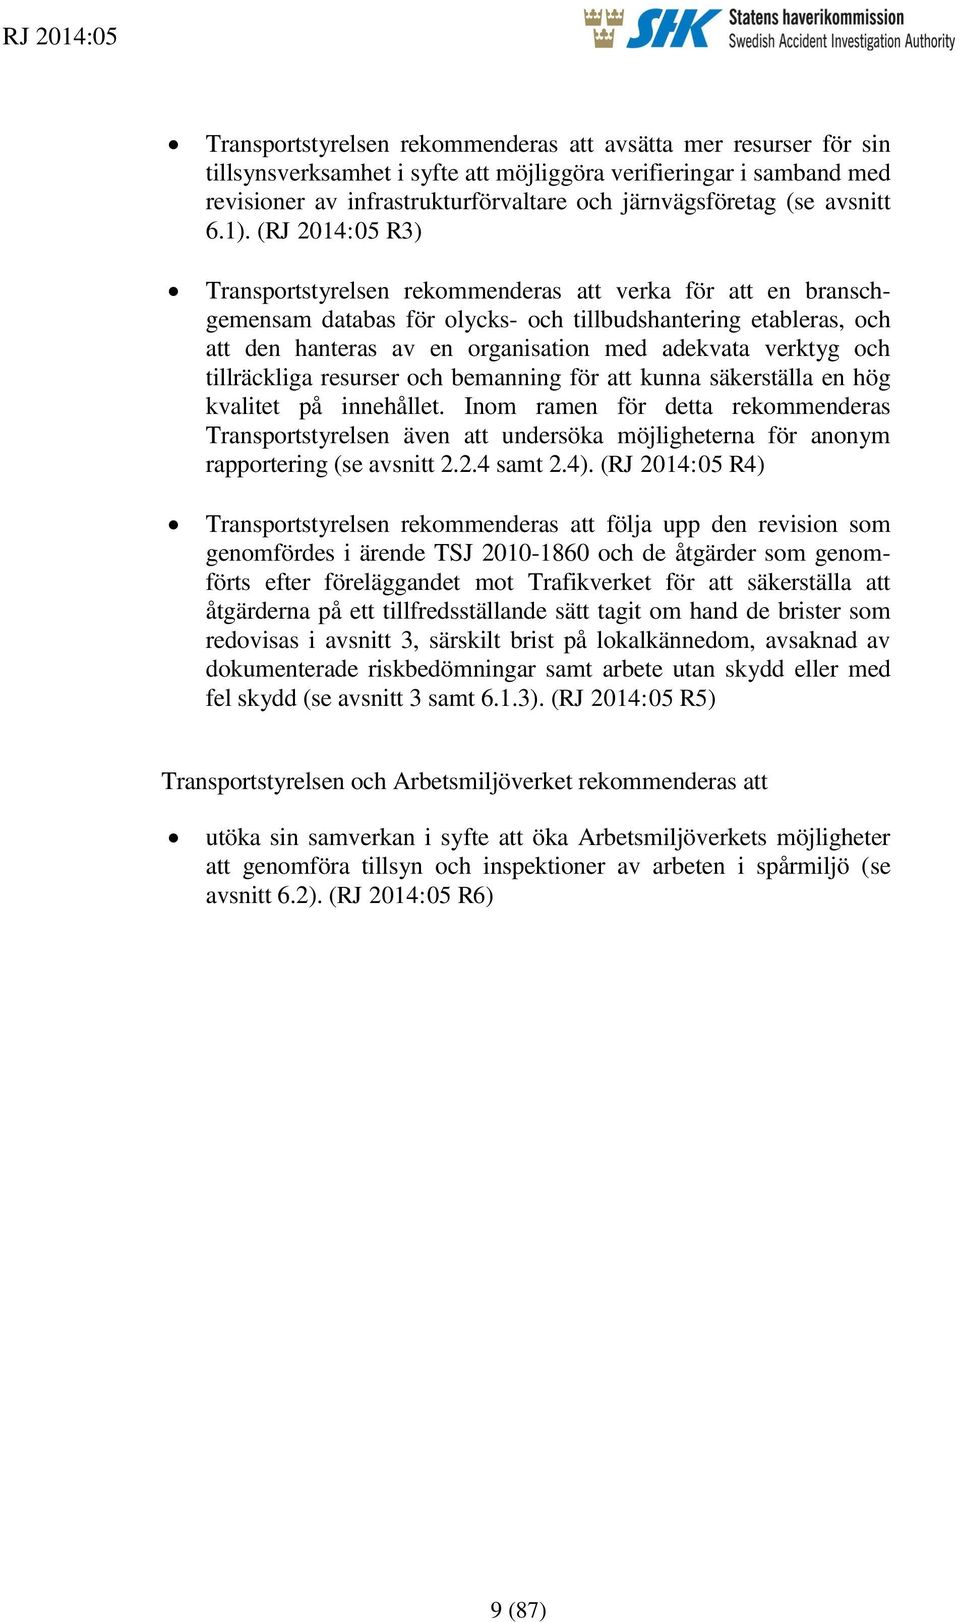 (RJ 2014:05 R3) Transportstyrelsen rekommenderas att verka för att en branschgemensam databas för olycks- och tillbudshantering etableras, och att den hanteras av en organisation med adekvata verktyg